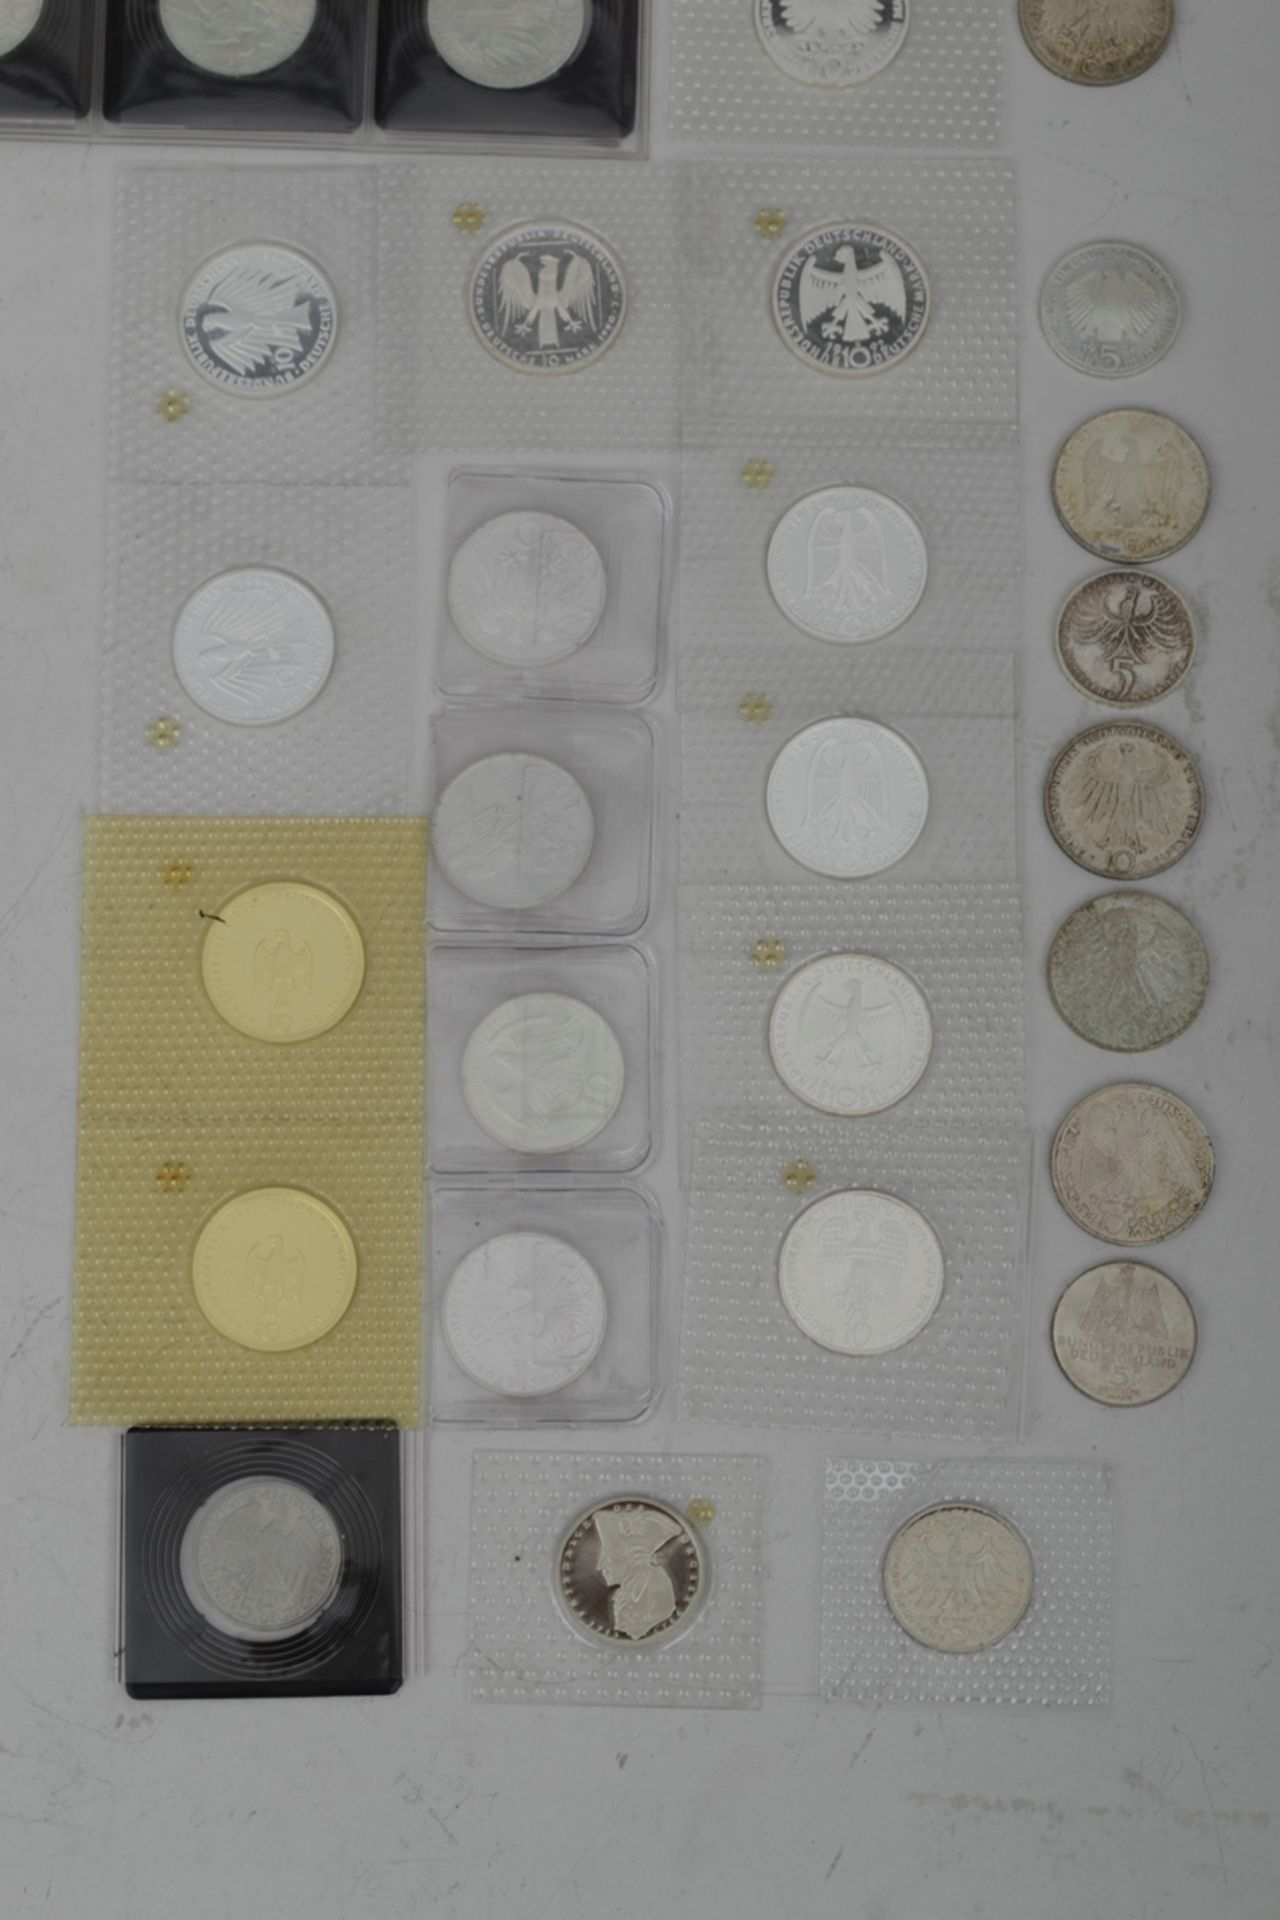 110tlg. Sammlung von 41 x 5 DM und 69 x 10 DM Münzen, teilweise Silber, zusammen ca. 895,- DM. Vers - Bild 5 aus 9